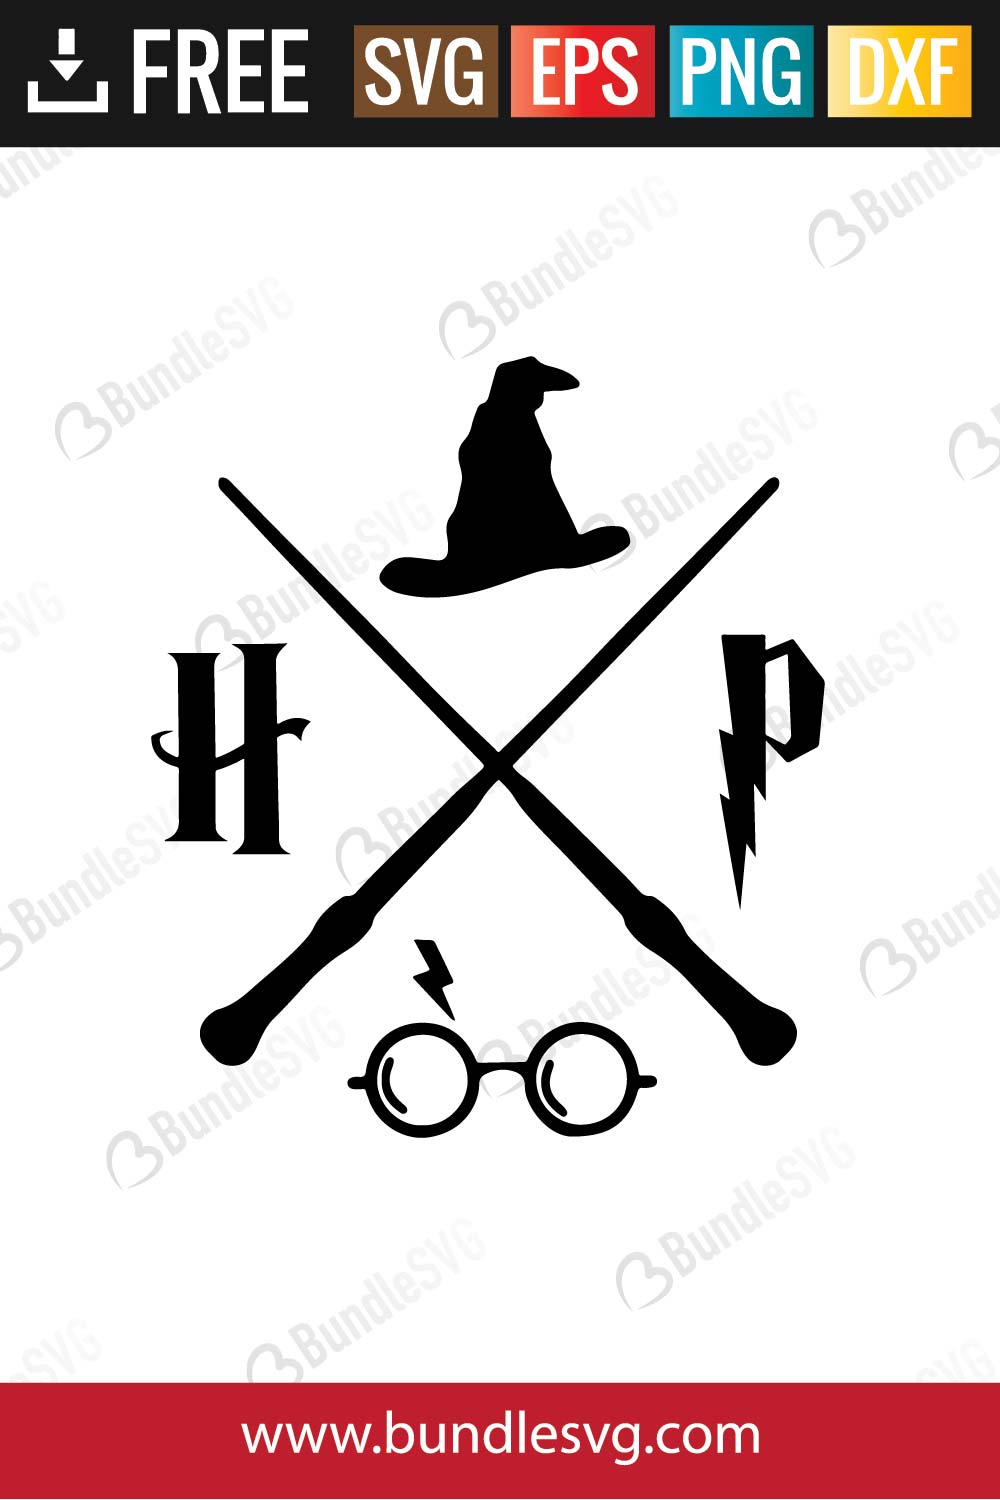 Harry Potter SVG Cut Files Free Download | BundleSVG.com